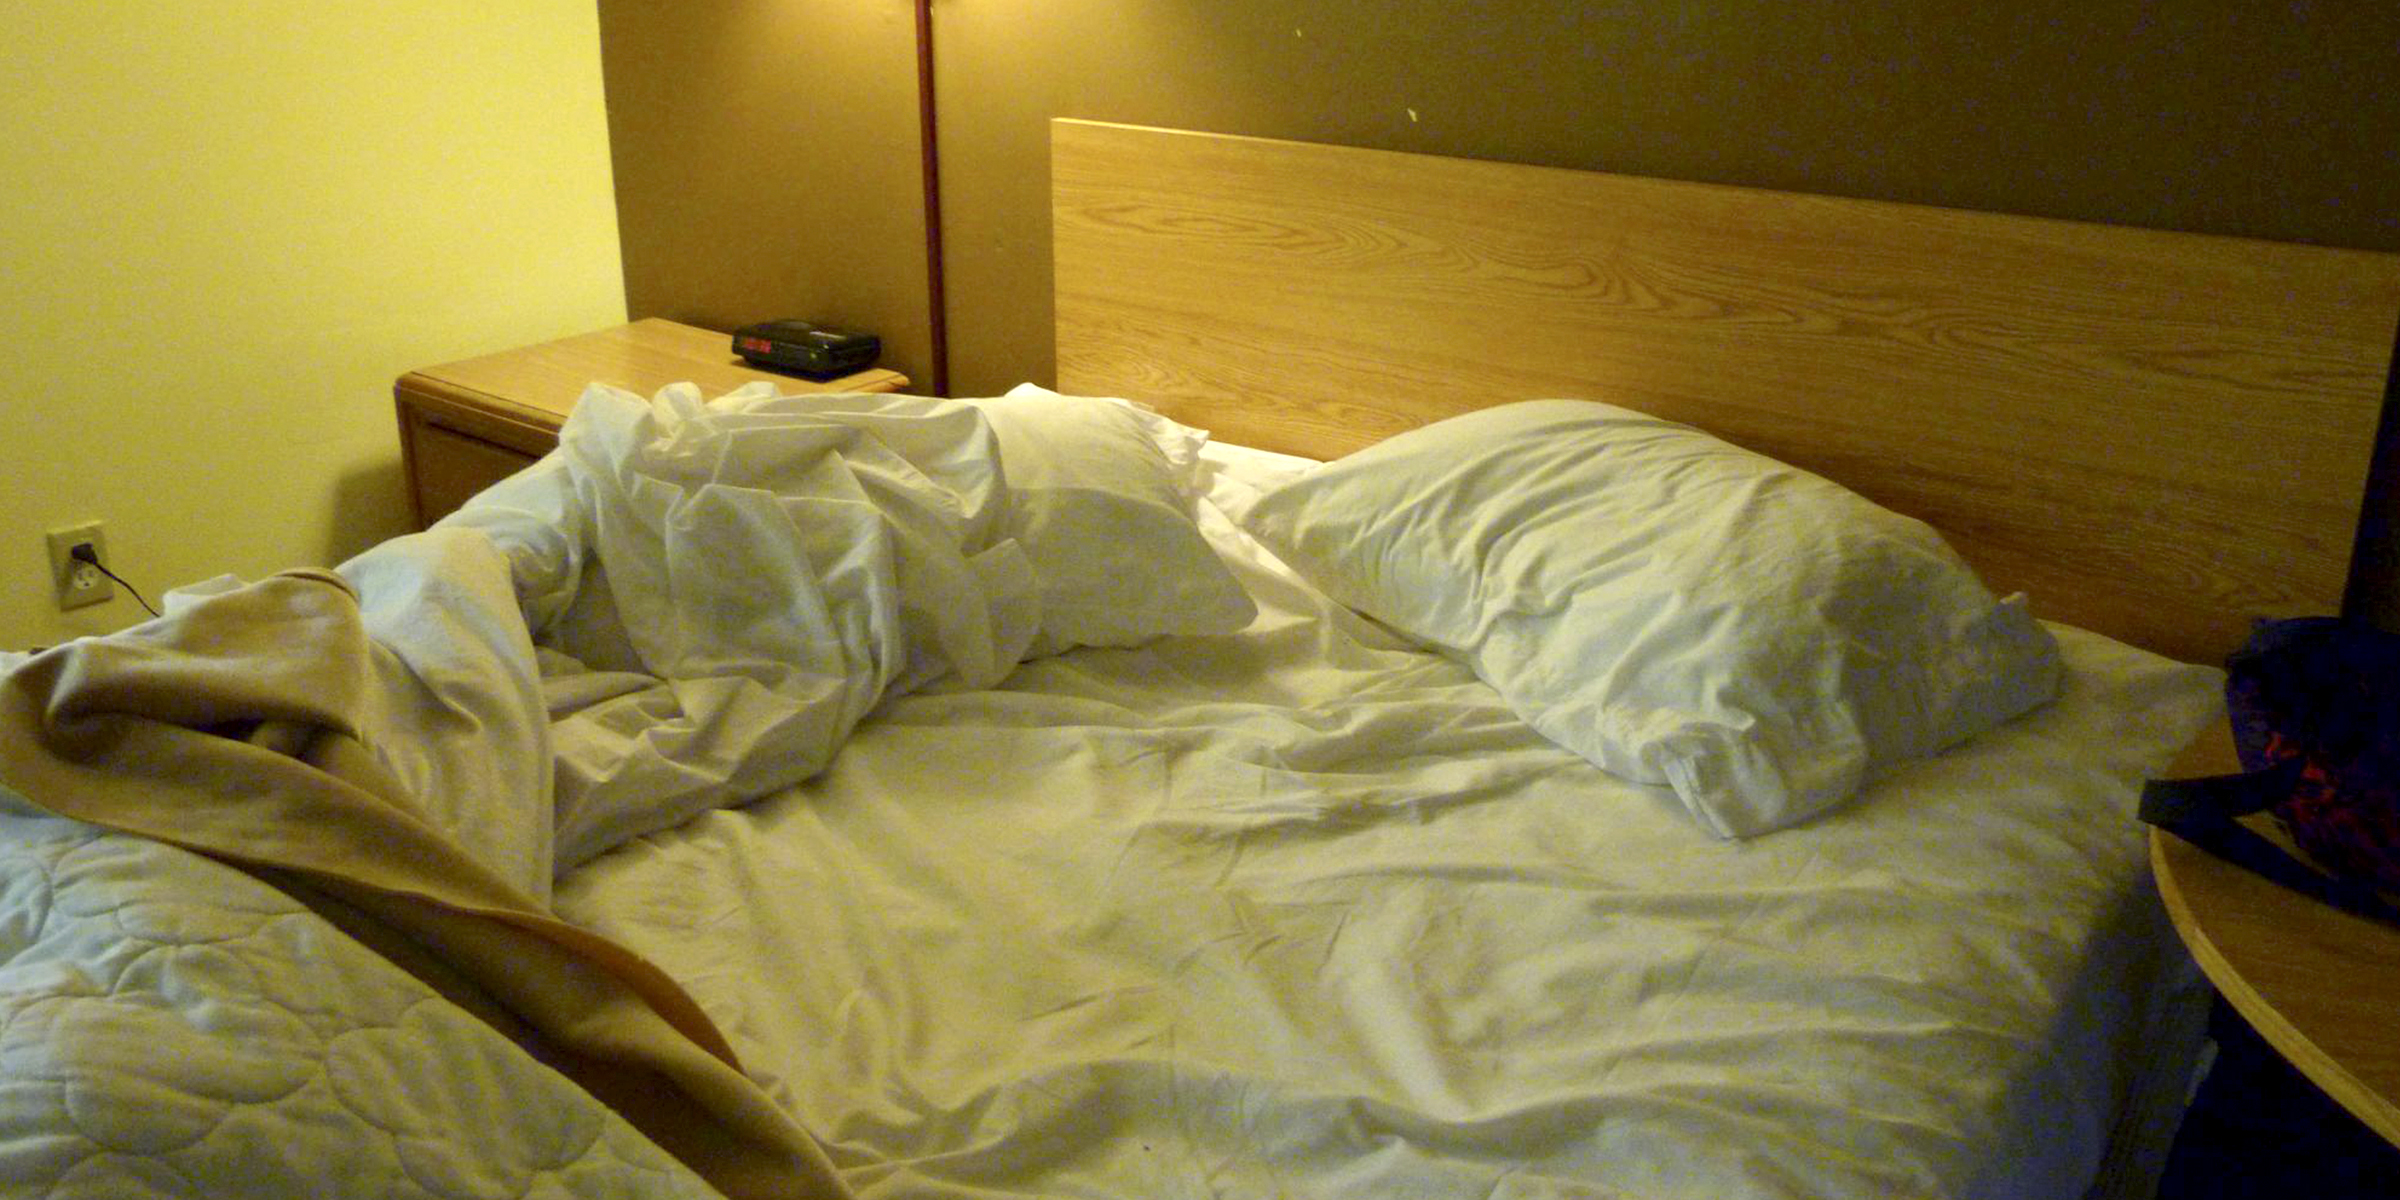 Una cama desordenada con sábanas y almohadas blancas. | Foto: Flickr.com/Rusty Clark (CC BY 2.0)